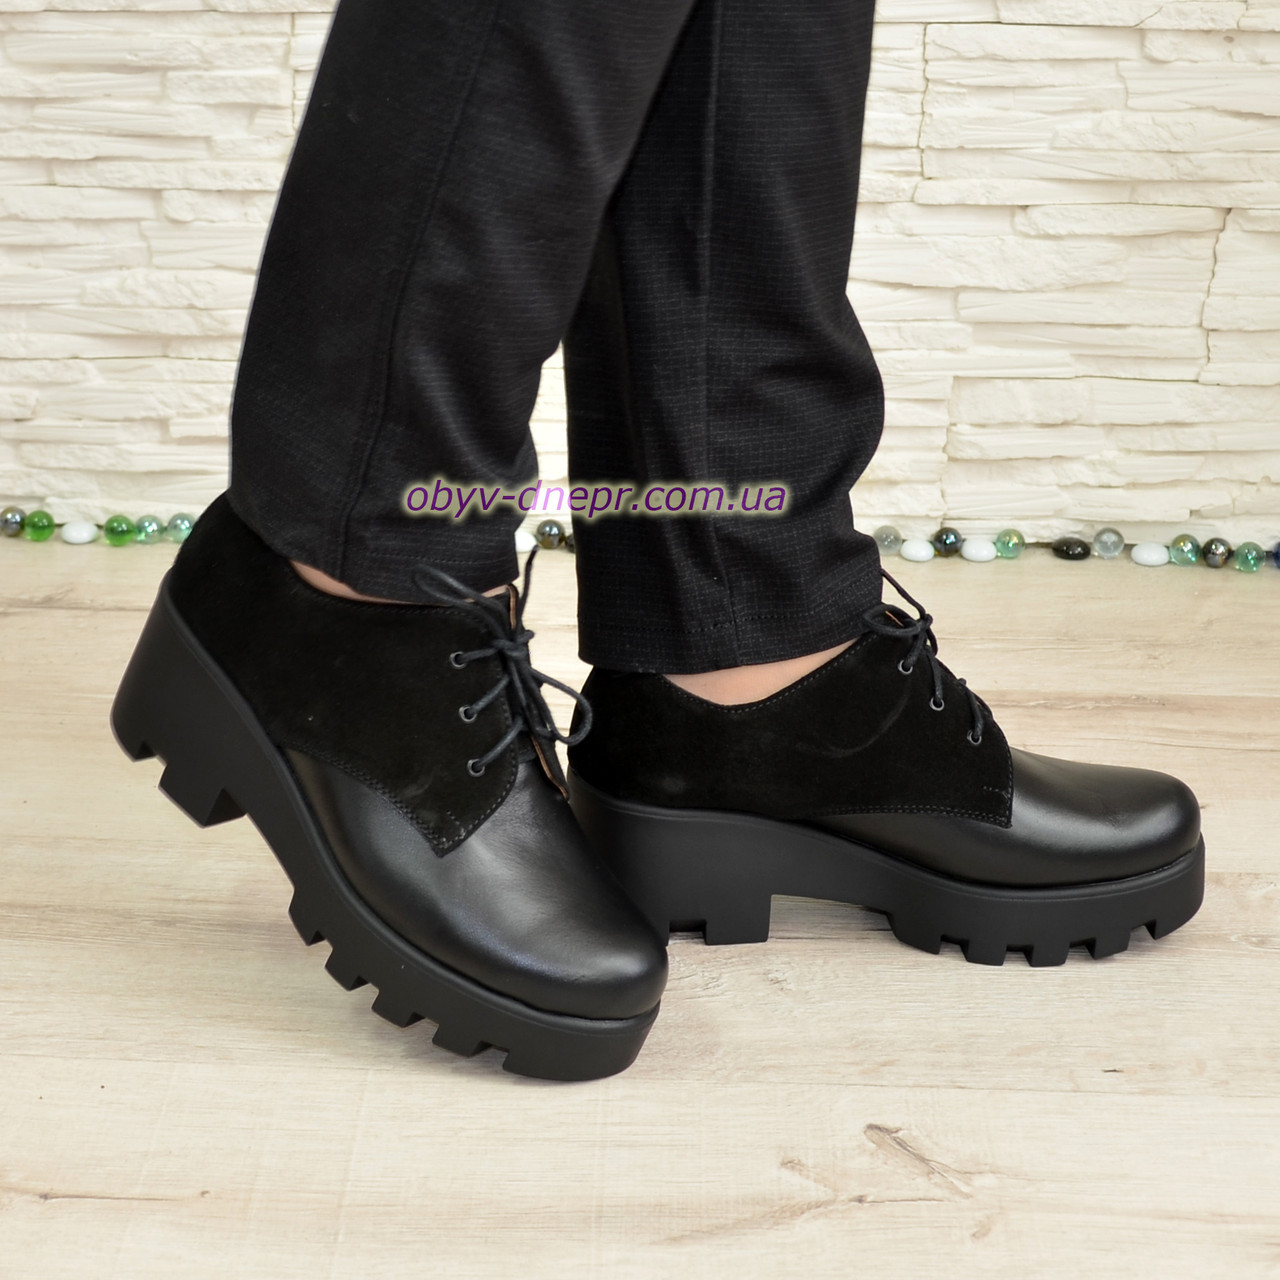 Стильні жіночі туфлі на тракторній підошві, натуральна шкіра і замш. 38 розмір